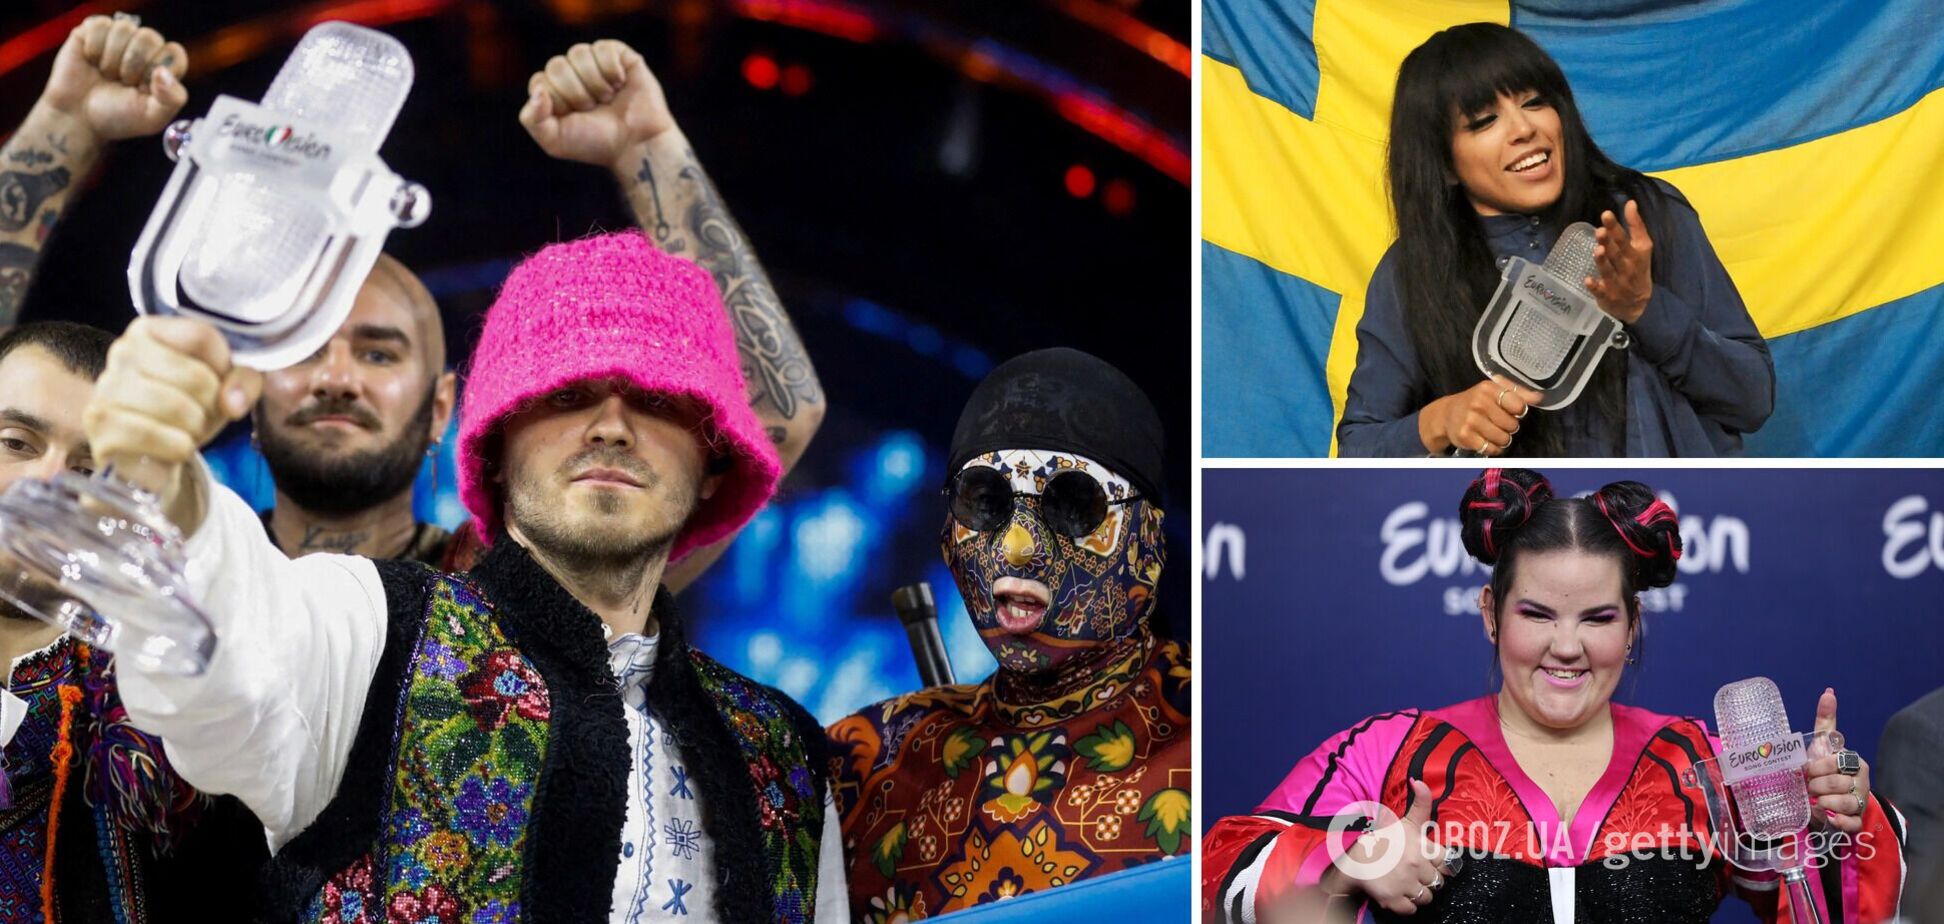 Україна в списку: які країни найчастіше вигравали на Євробаченні. Відео